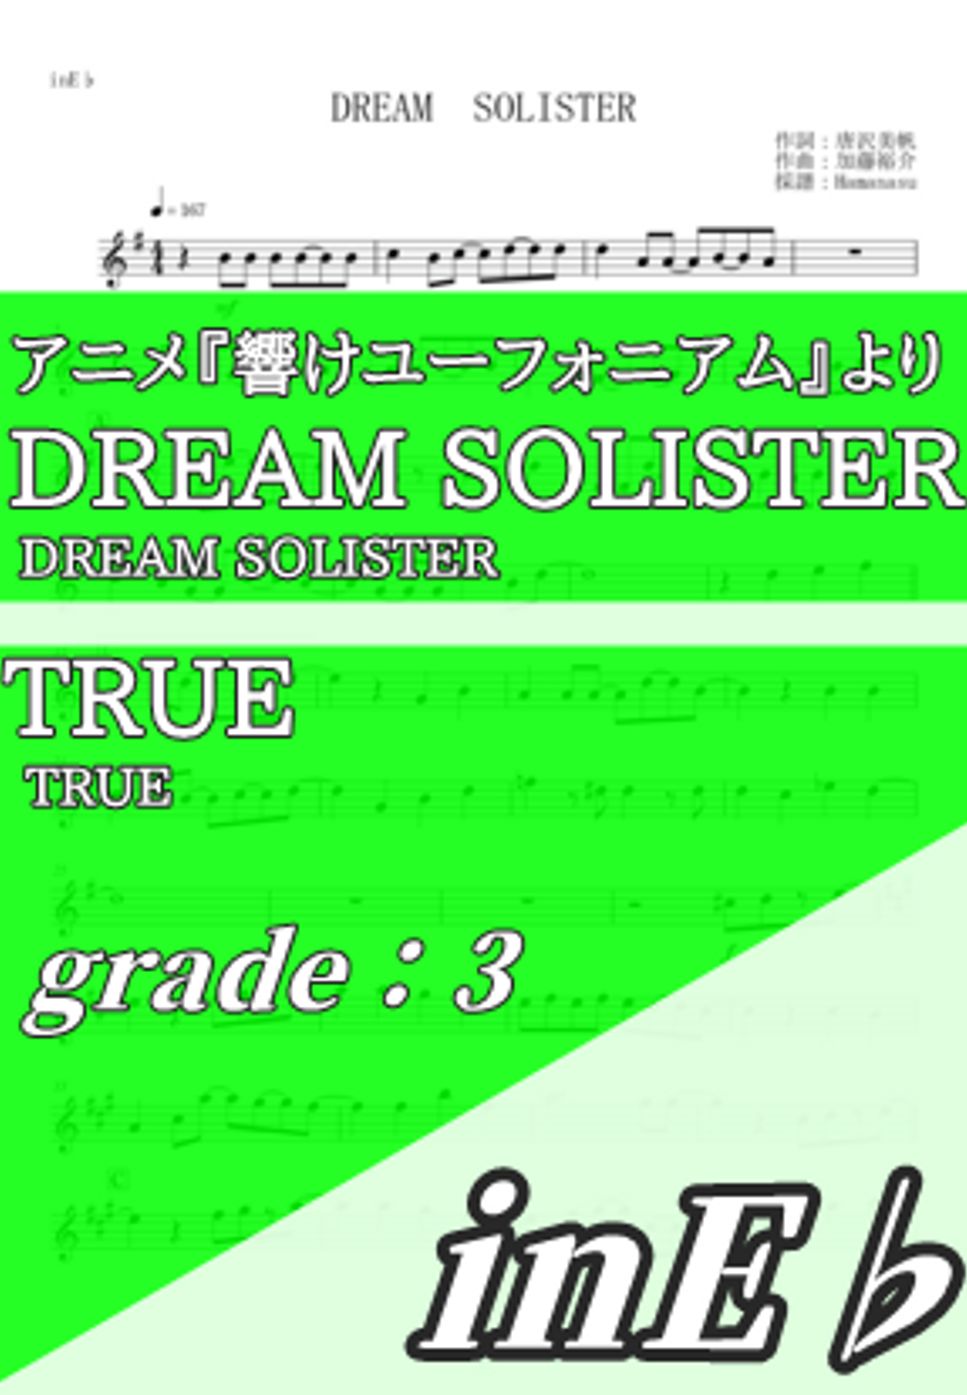 TRUE - DREAM SOLISTER (inE♭) by Hamanasu